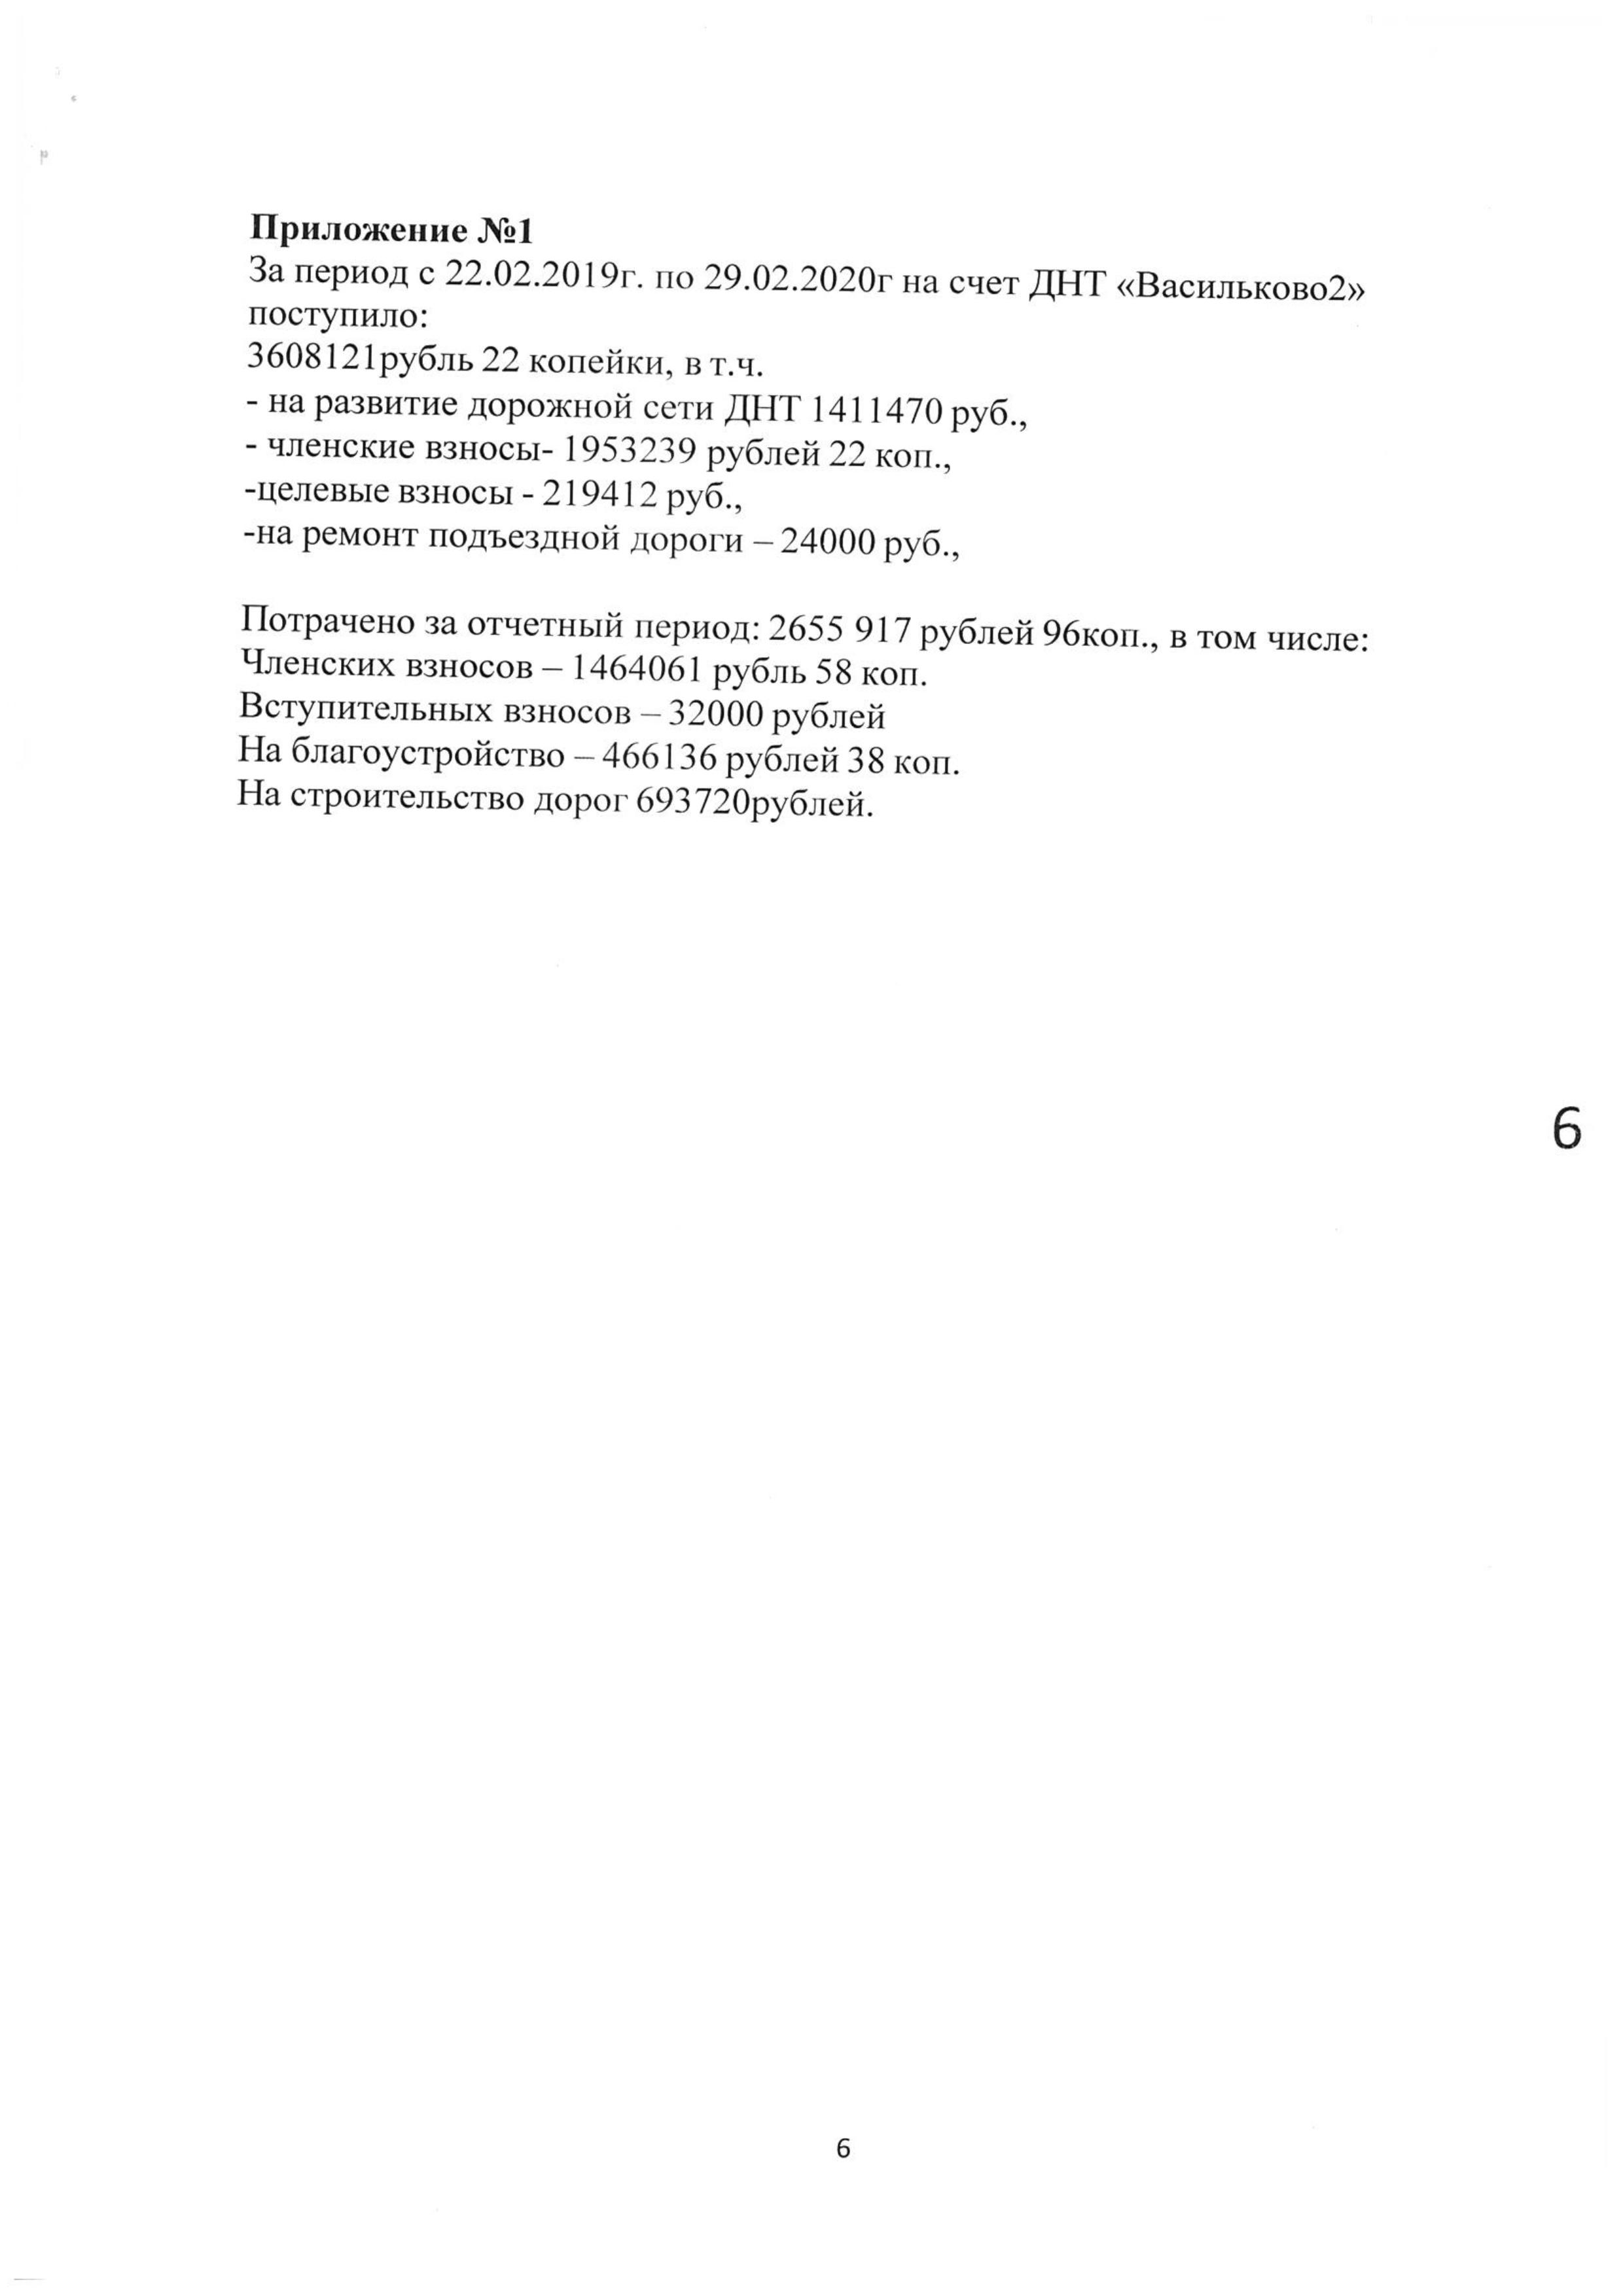 Отчет ревизионной комиссии Васильково-2 14.03.2020 страница 6